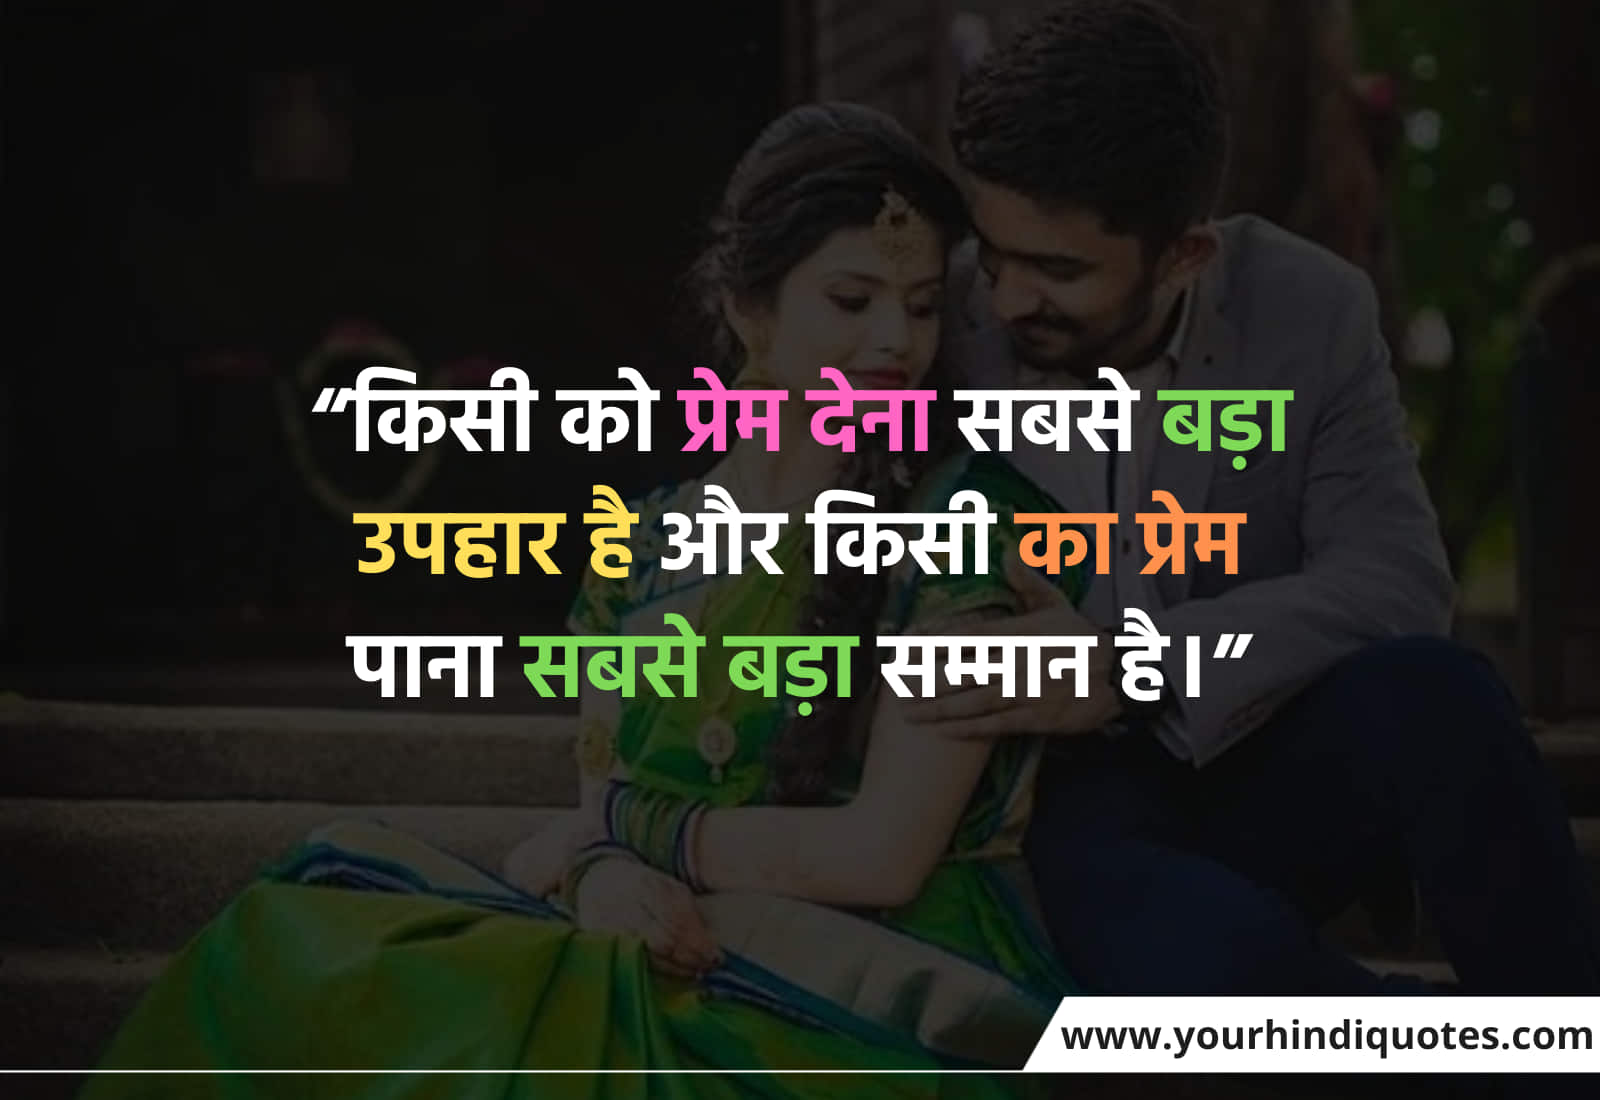 Hindi Love Quotes